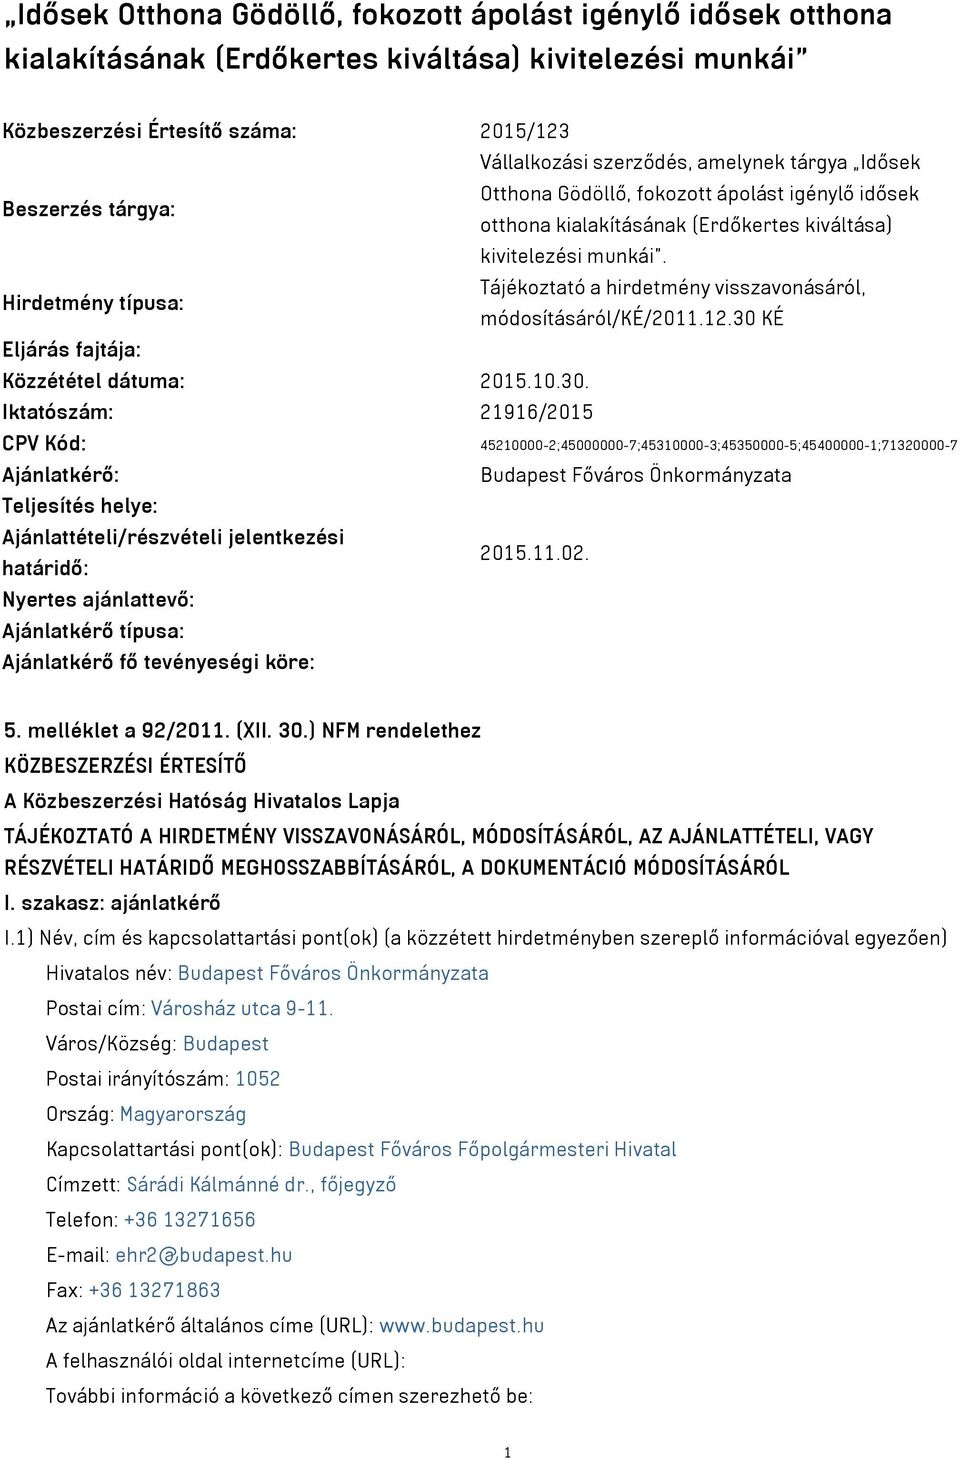 Tájékoztató a hirdetmény visszavonásáról, Hirdetmény típusa: módosításáról/ké/2011.12.30 